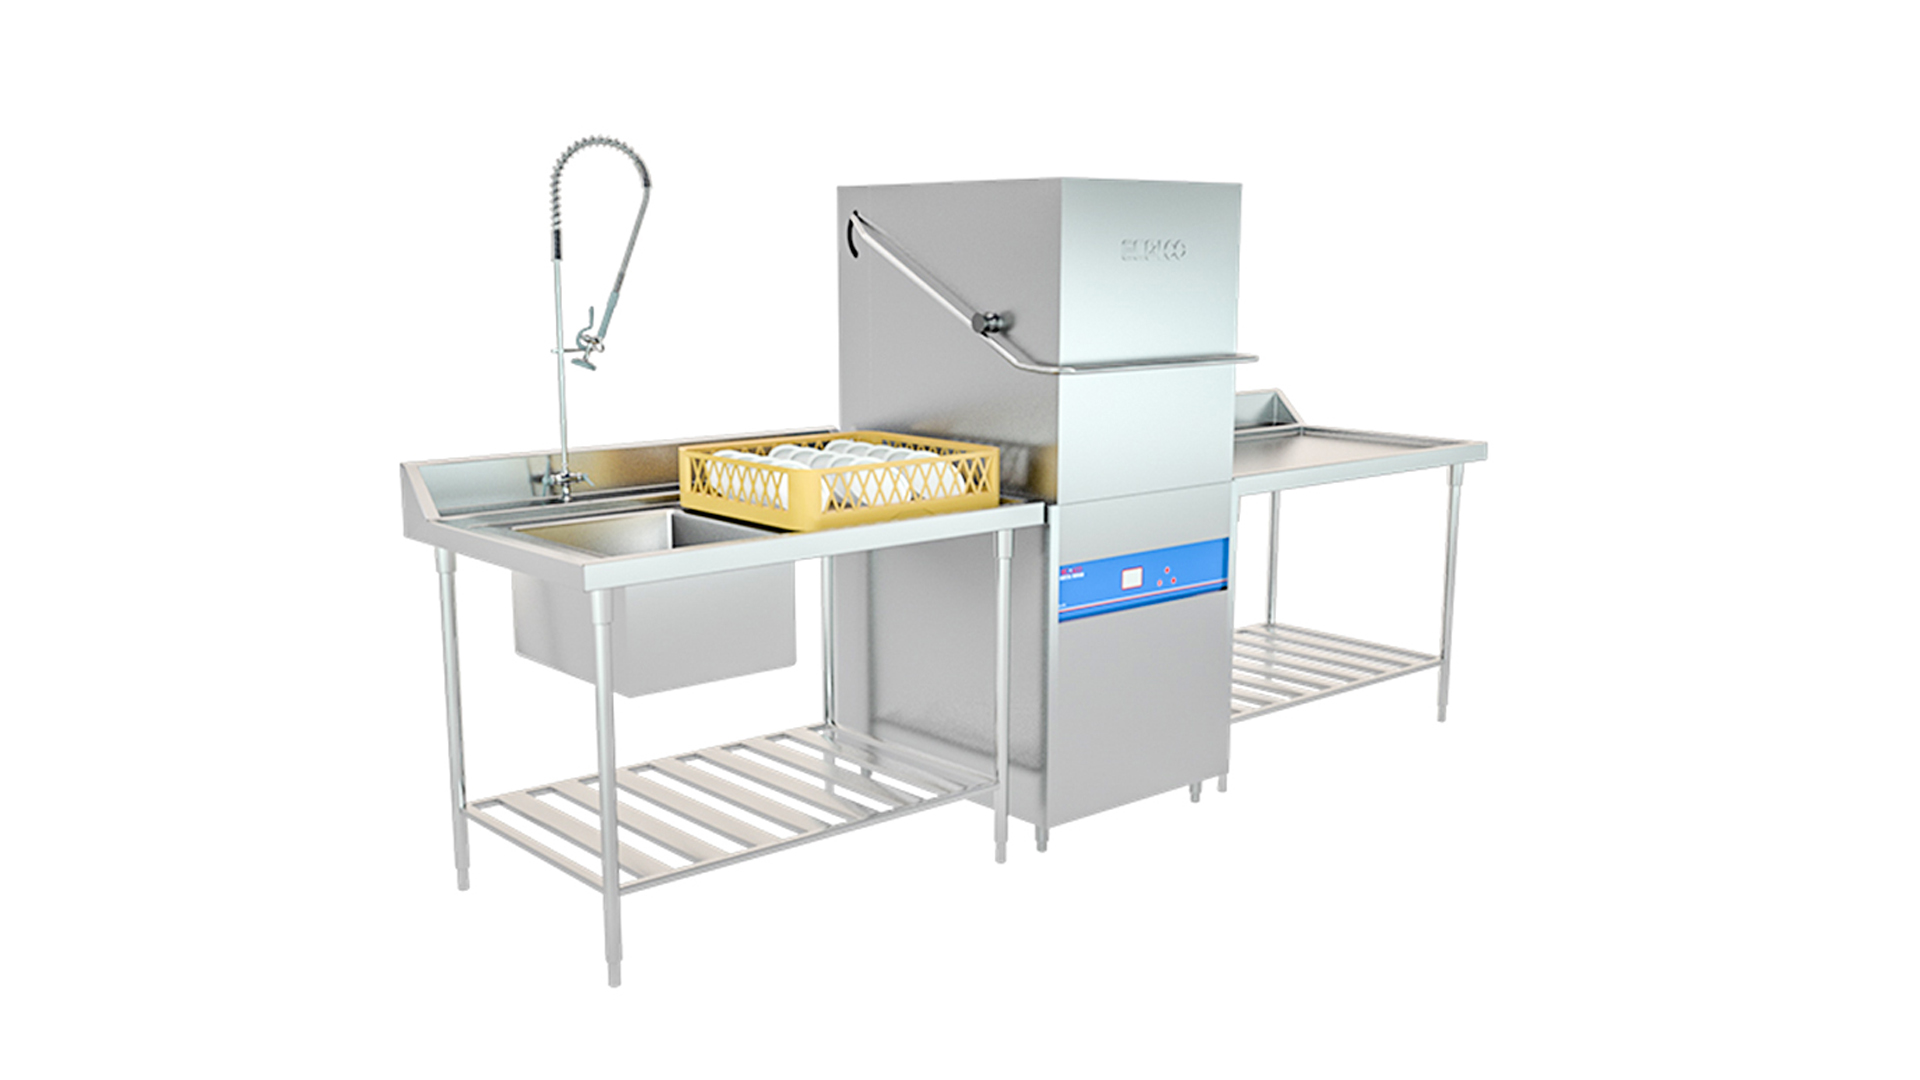 USA ECO Brand Commercial Deckelöffner Geschirrspülmaschine/Geschirrspüler für Restaurant